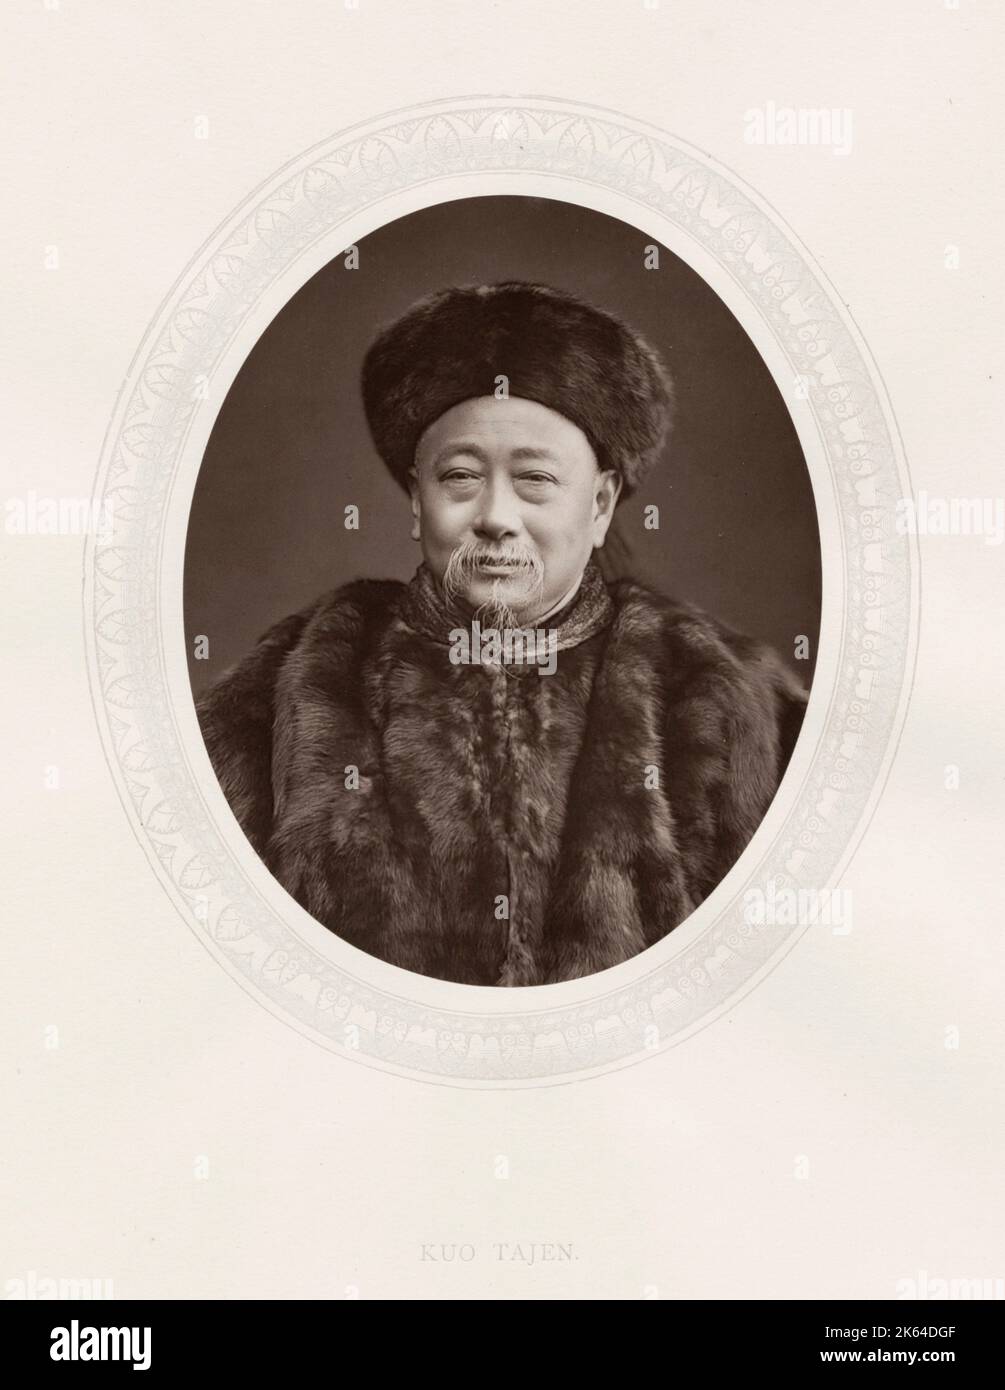 Fotografia d'annata del XIX secolo: Kuo Sung-Tao (1818-?), ufficialmente noto come Kuo Tajen, è stato il primo inviato diplomatico cinese a risiedere in Gran Bretagna. Questo Woodburytype è tratto da una serie di sette volumi dal titolo 'Men of Mark'. Pubblicato tra il 1876 e il 1883 Foto Stock